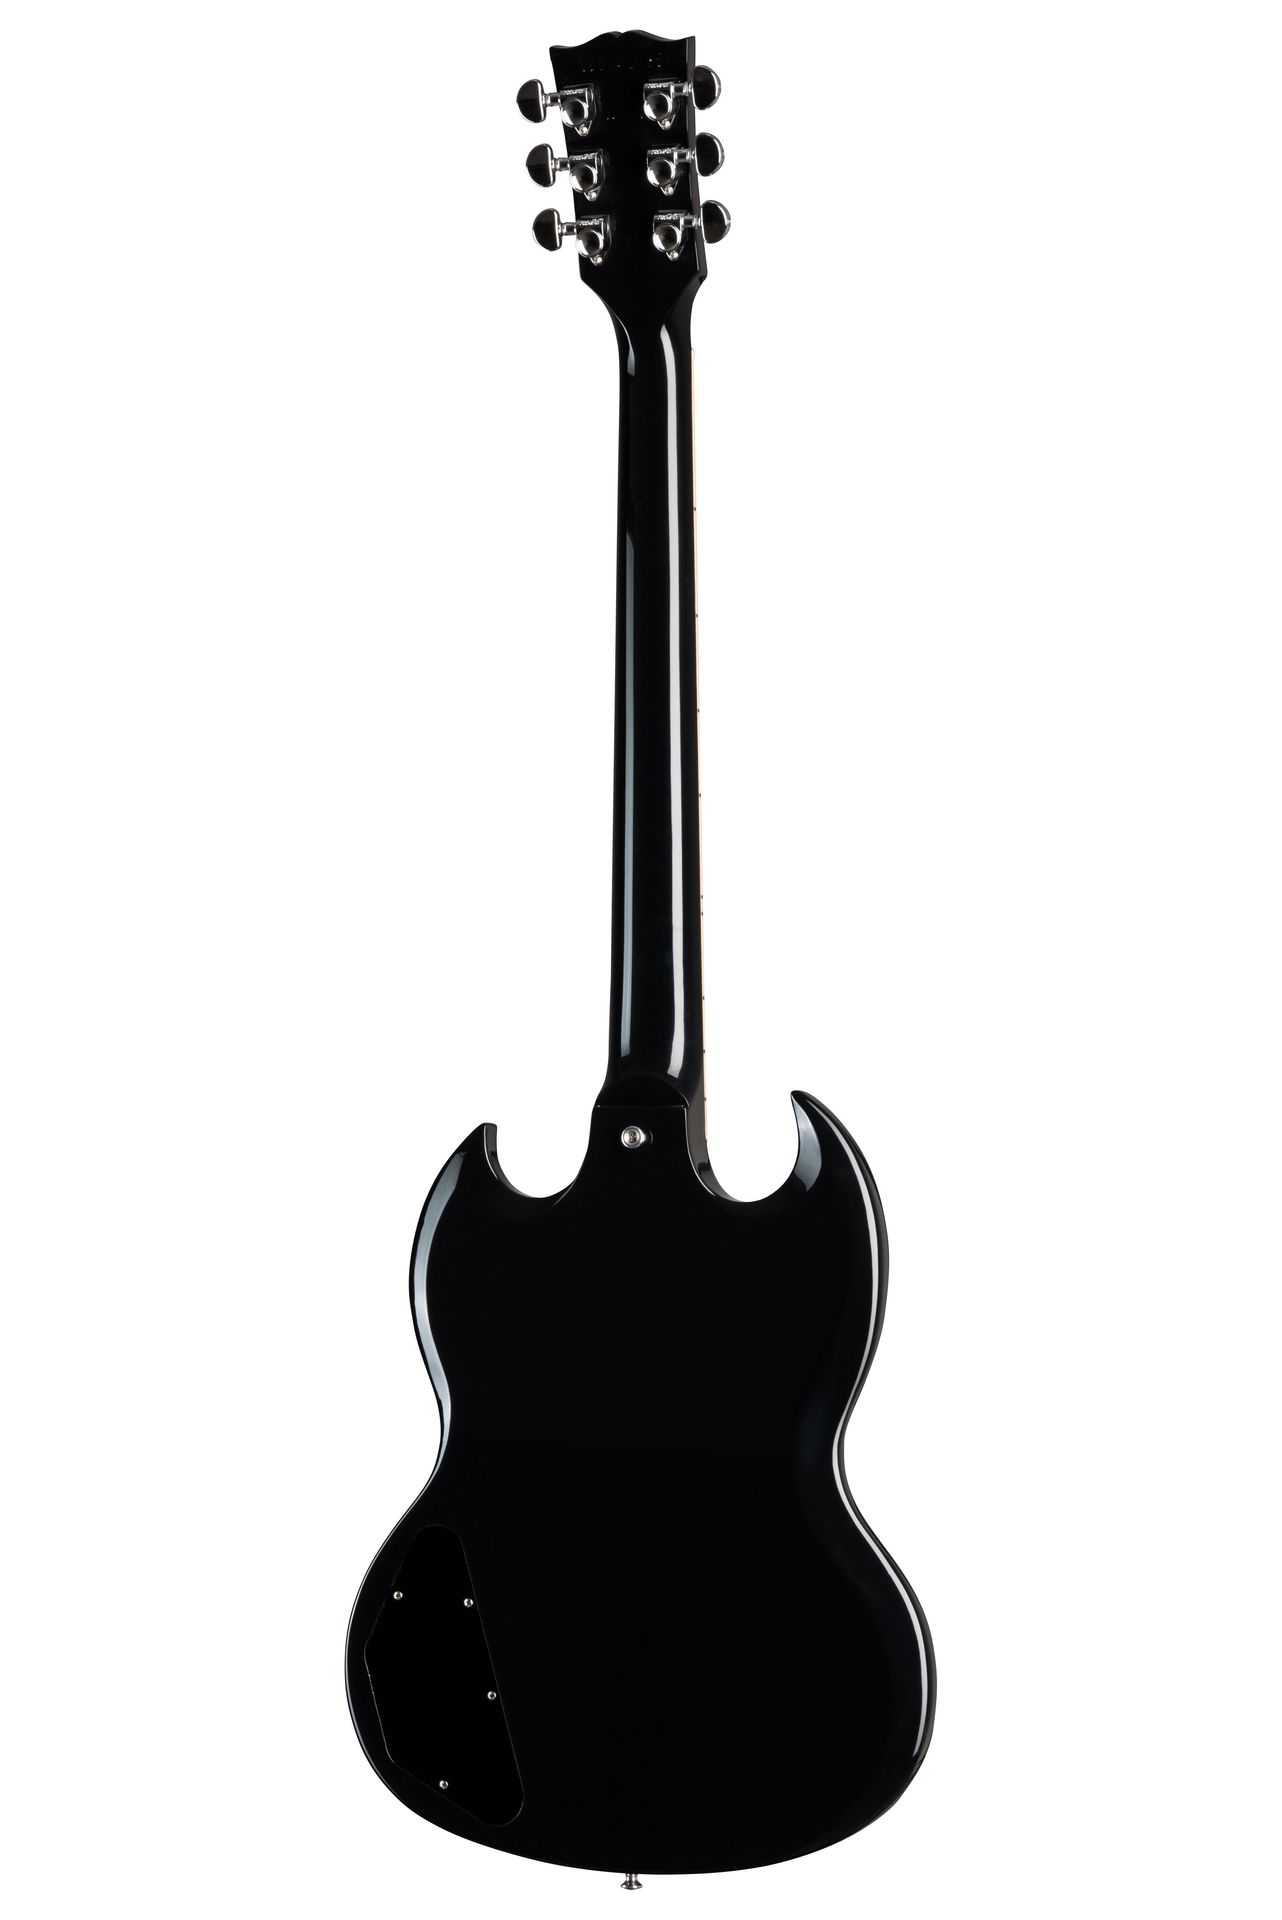 Gibson SG Standard EB Ebony